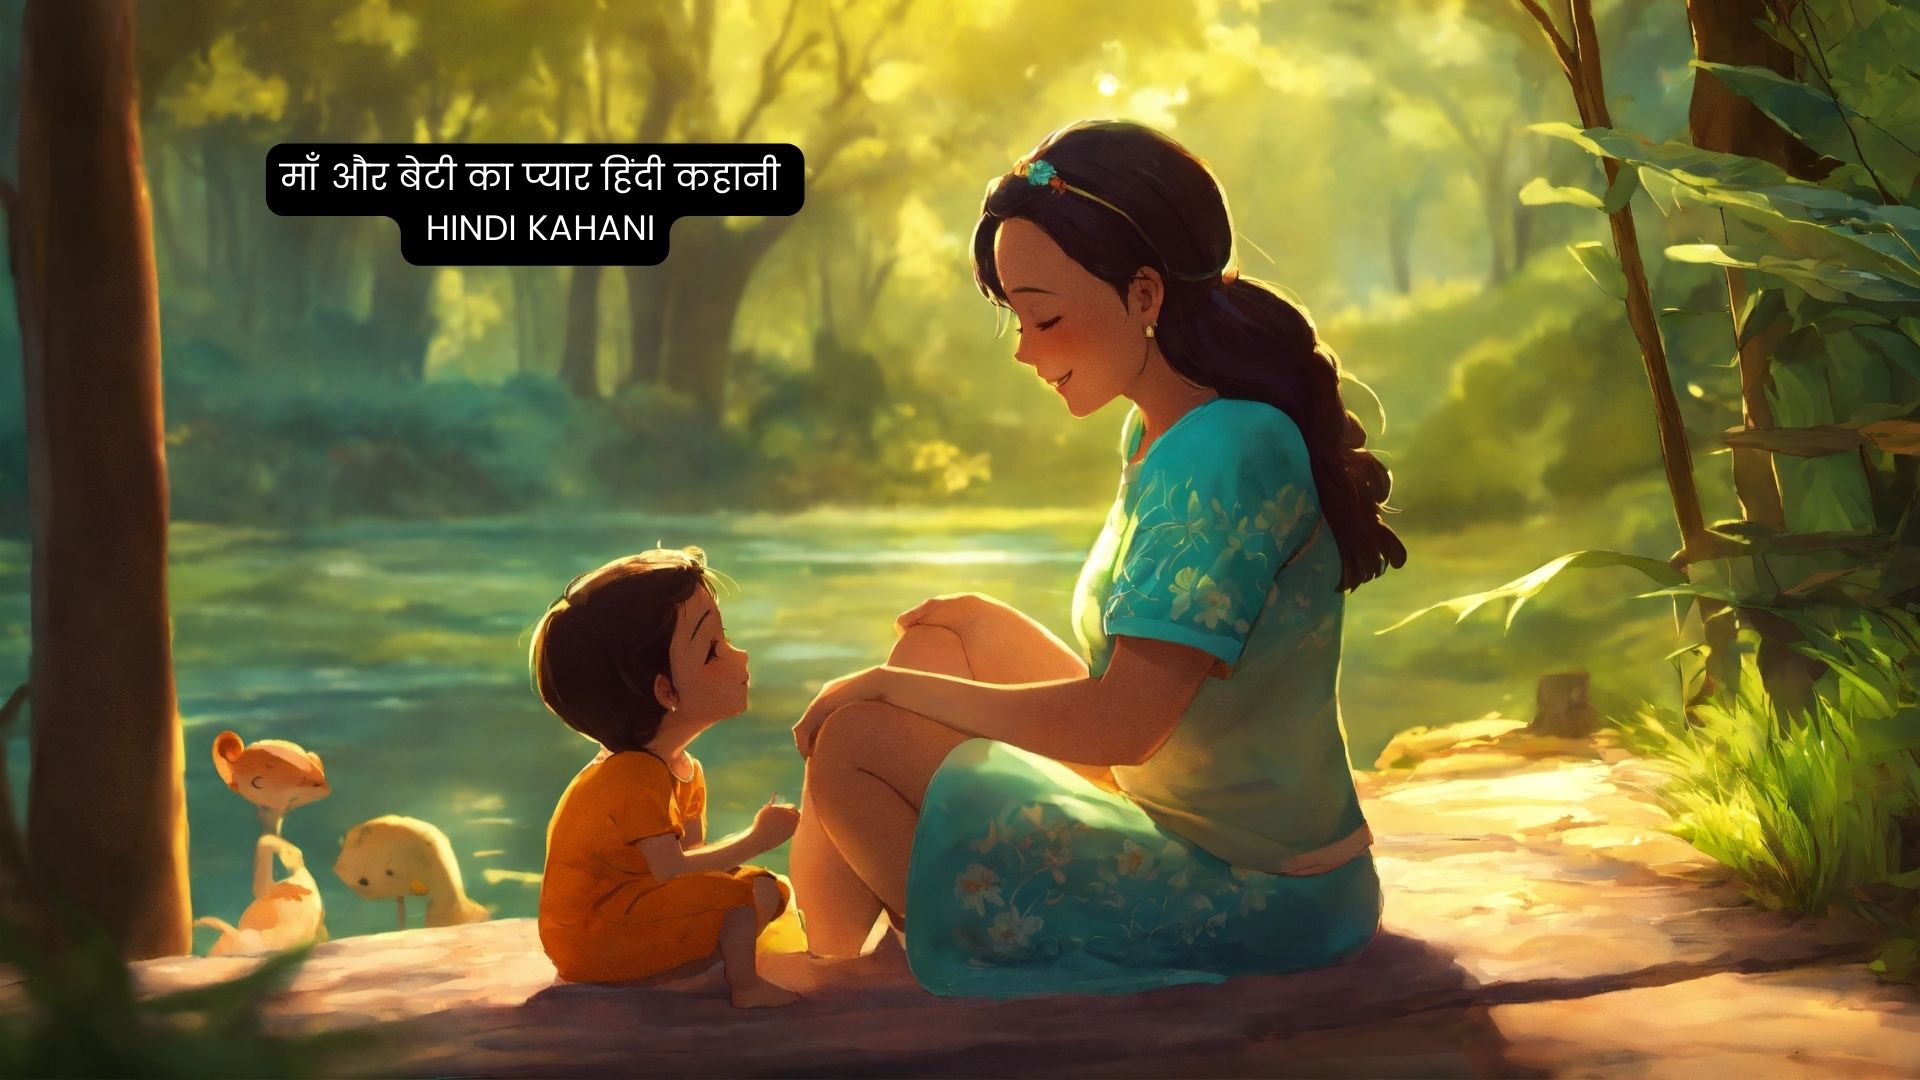 माँ और बेटी का प्यार हिंदी कहानी | Hindi Kahani